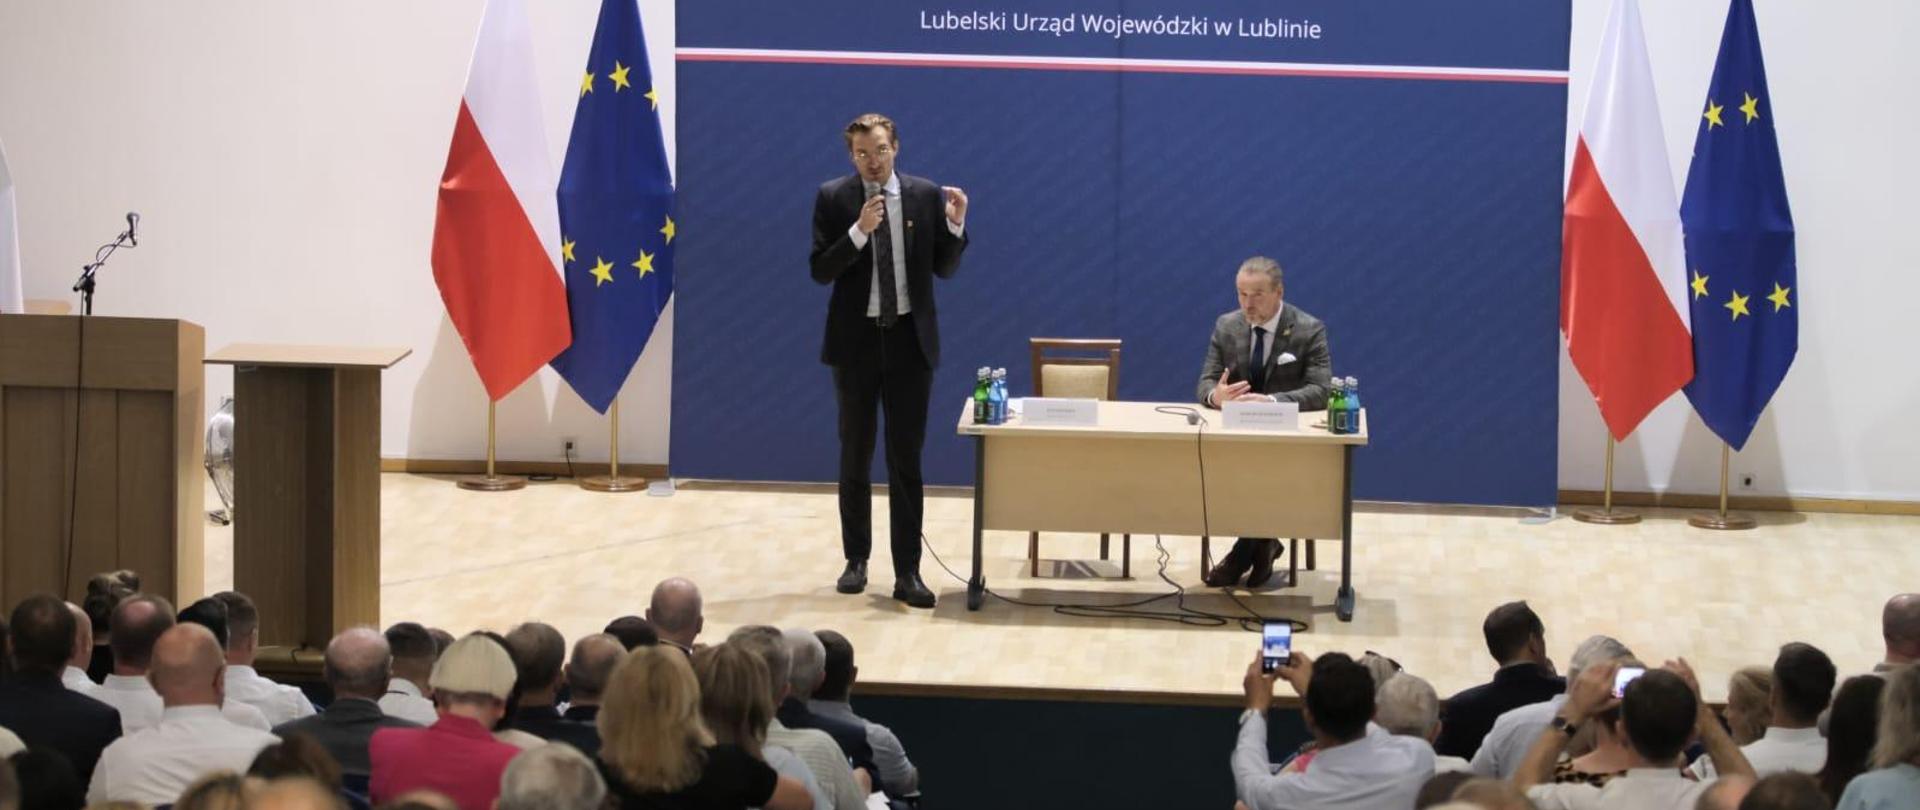 Na scenie wiceminister Jan Szyszko z mikrofonem. Przed nim publiczność.